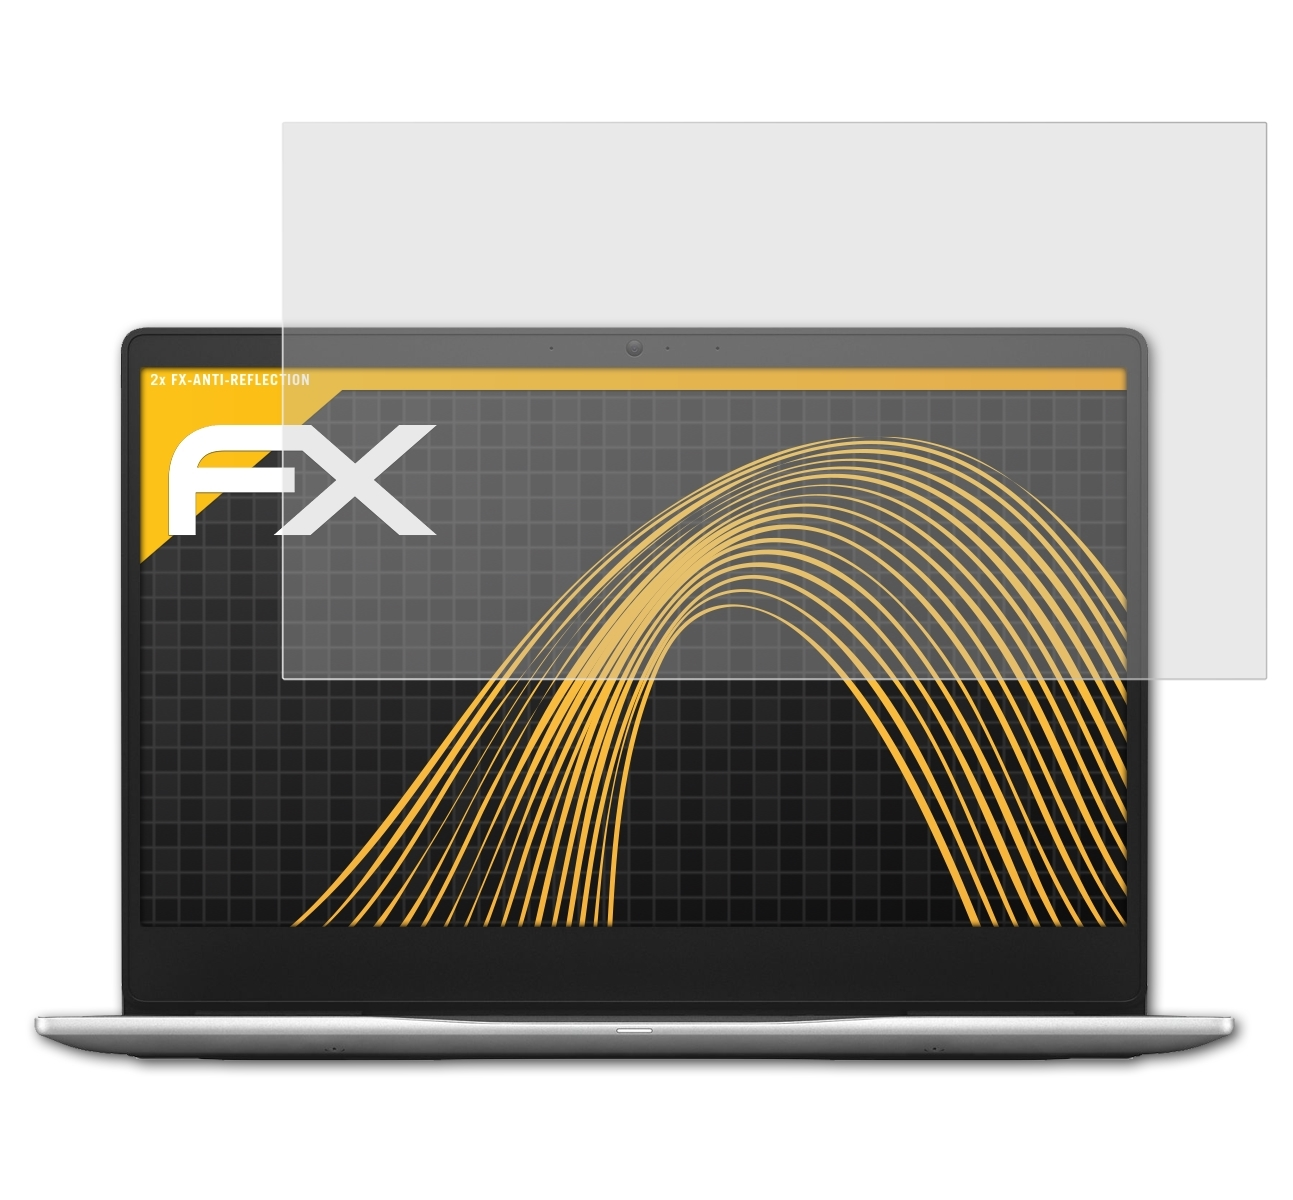 2x Displayschutz(für (7370)) 13 7000 Inspiron FX-Antireflex ATFOLIX Dell